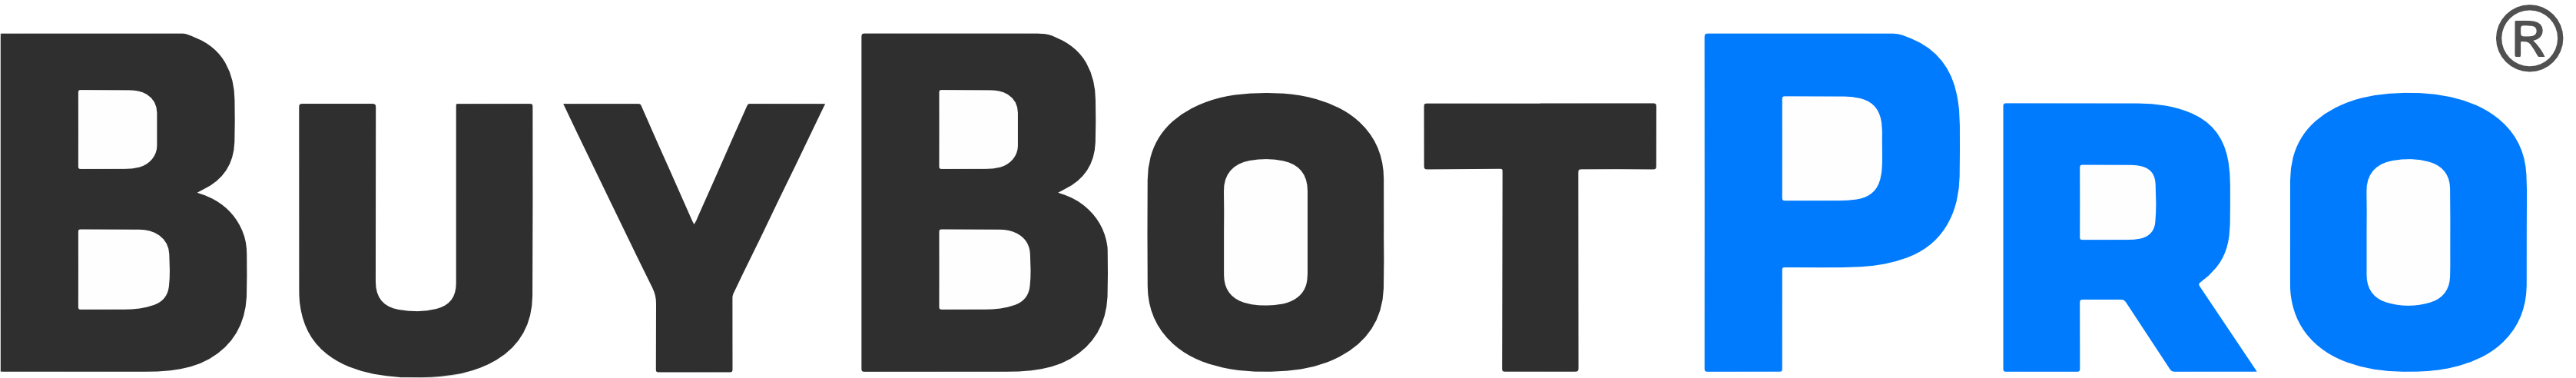 BuyBotPro Logo